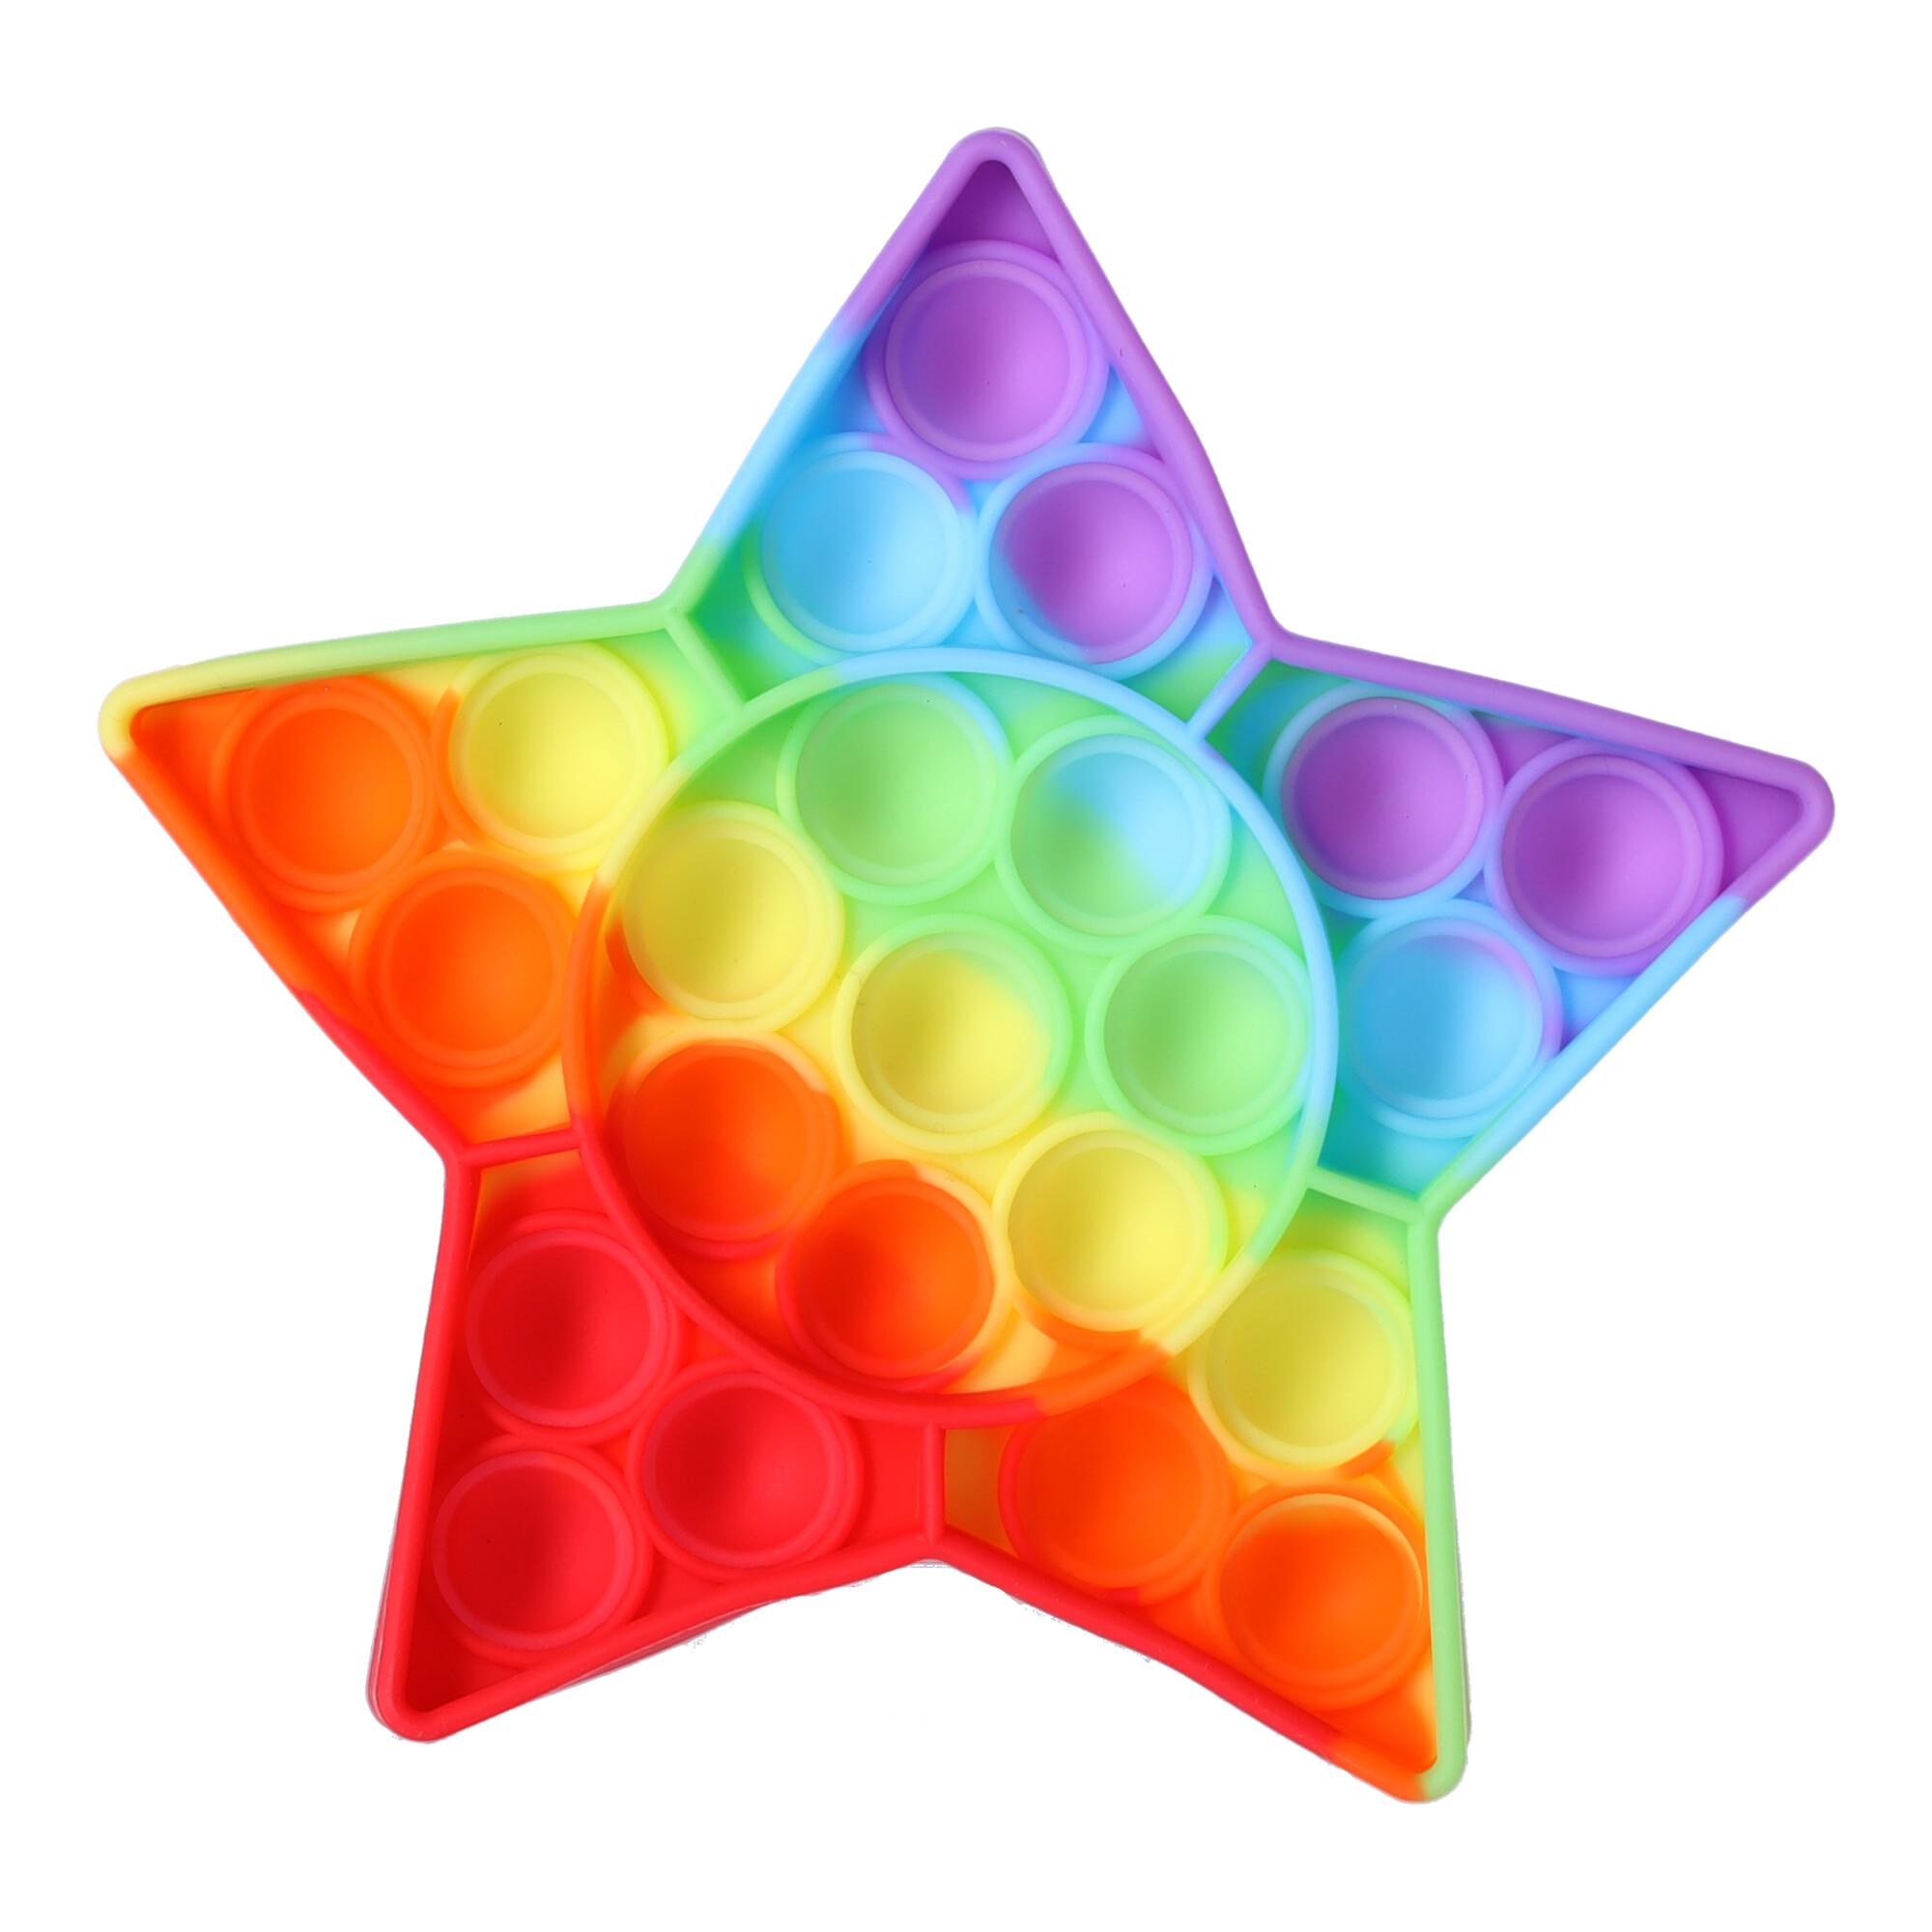 Star-shaped anti-stress sensory toy